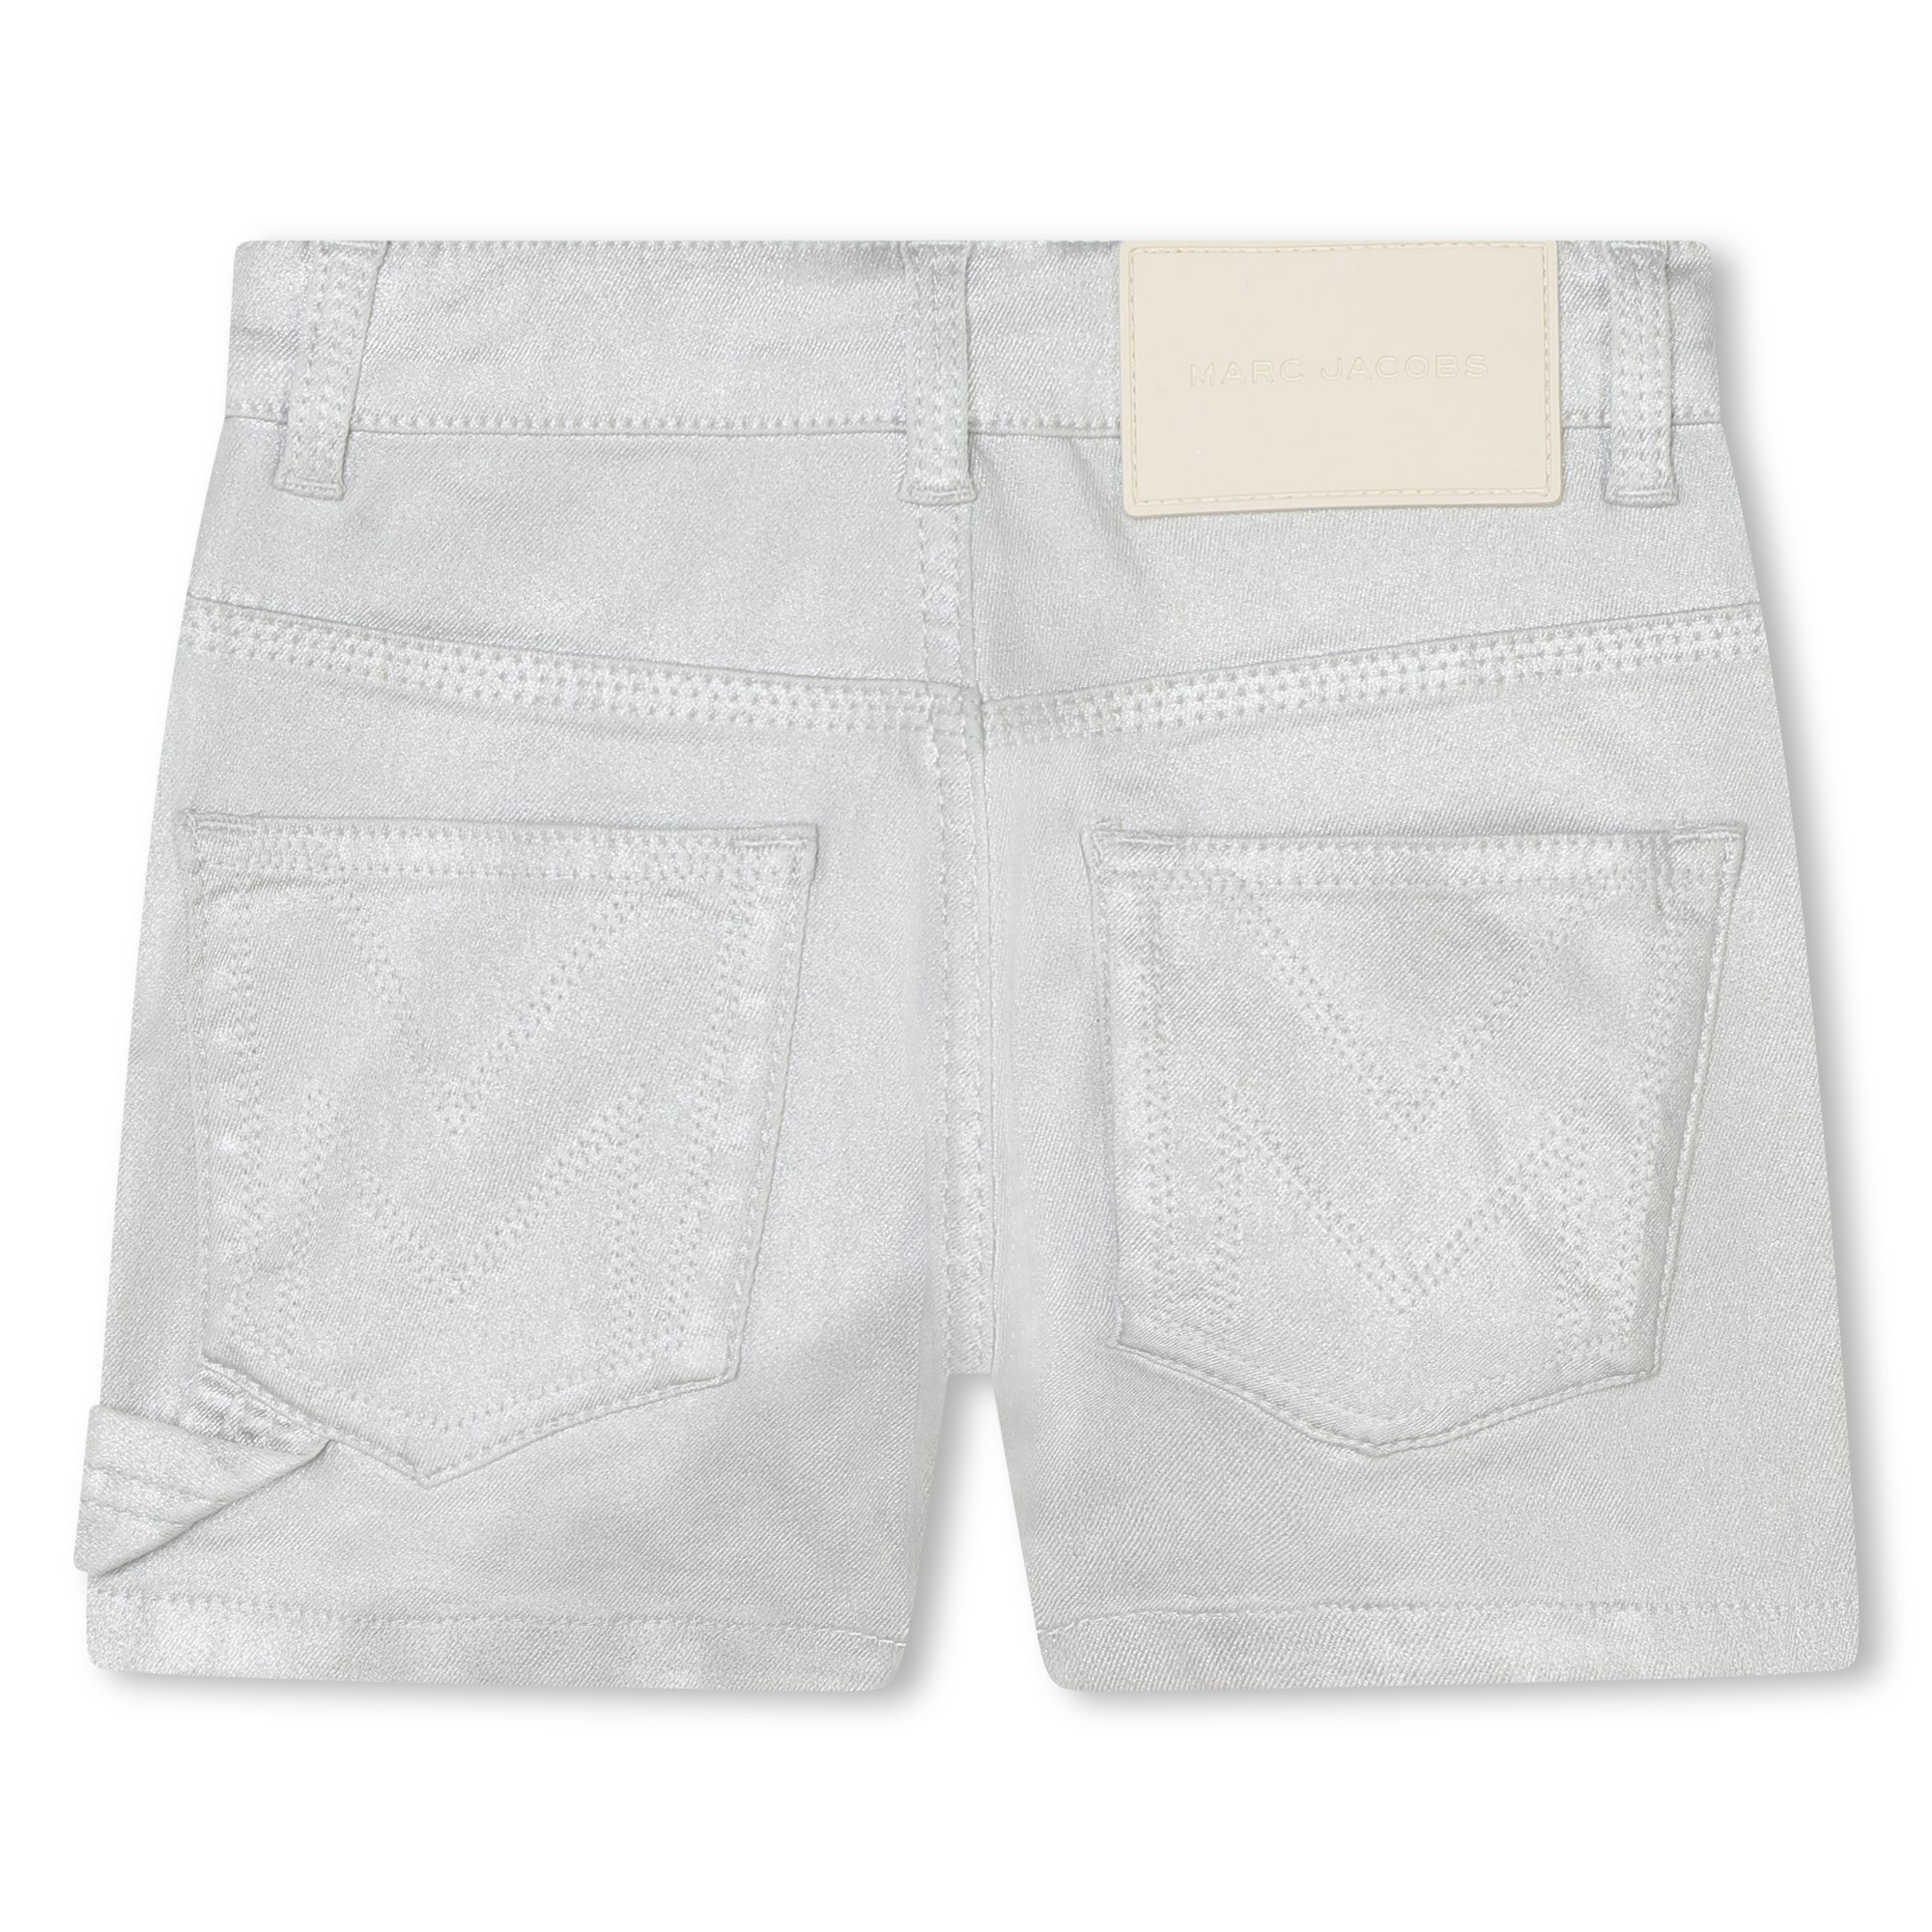 Adjustable denim shorts MARC JACOBS for GIRL